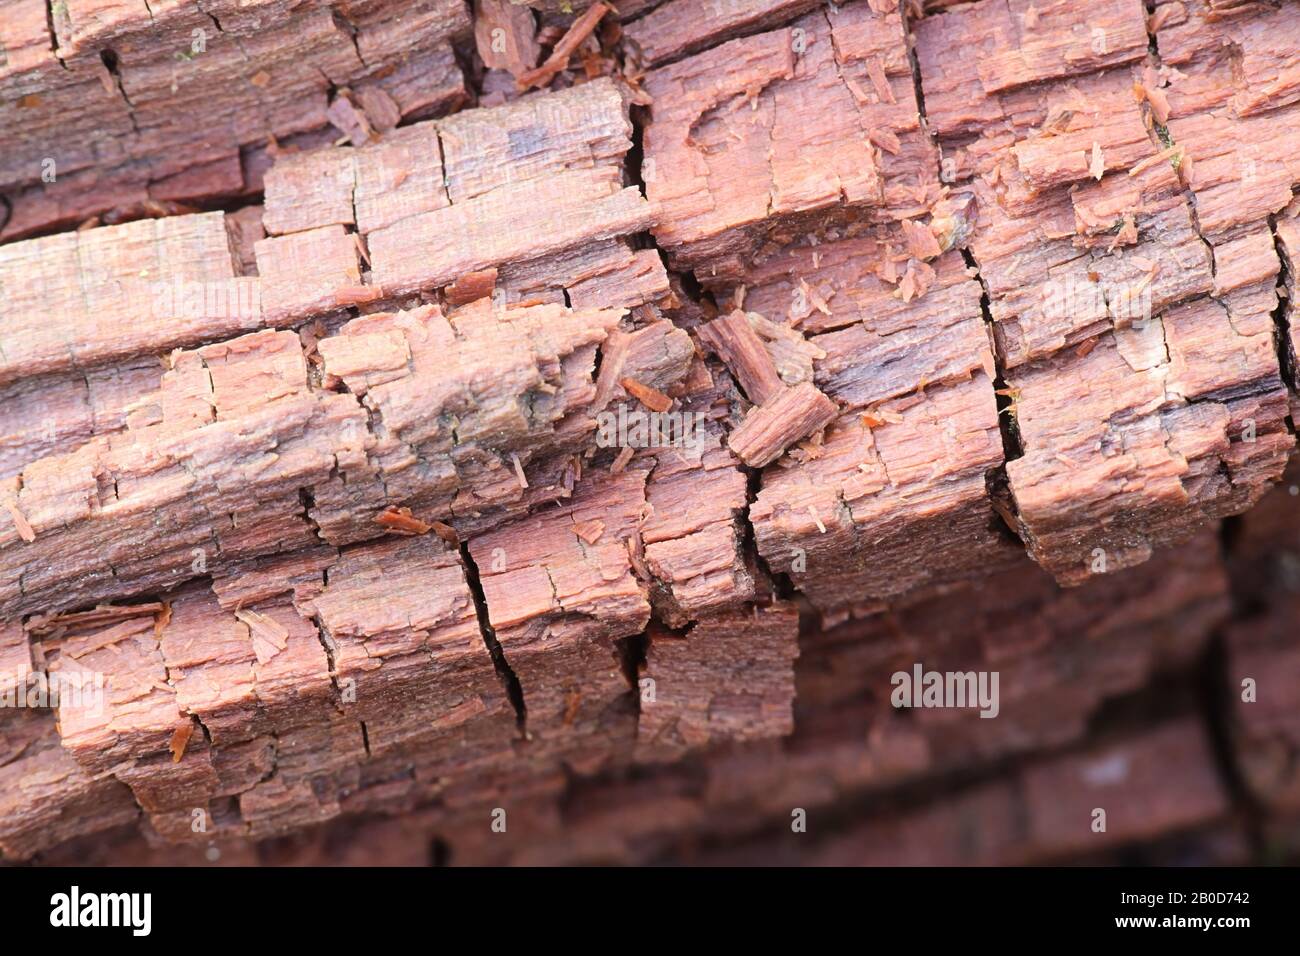 Braunfäule-Pilz zerbrach Hemizellulose und Zellulose und zeigt den typischen kubischen Bruch Stockfoto